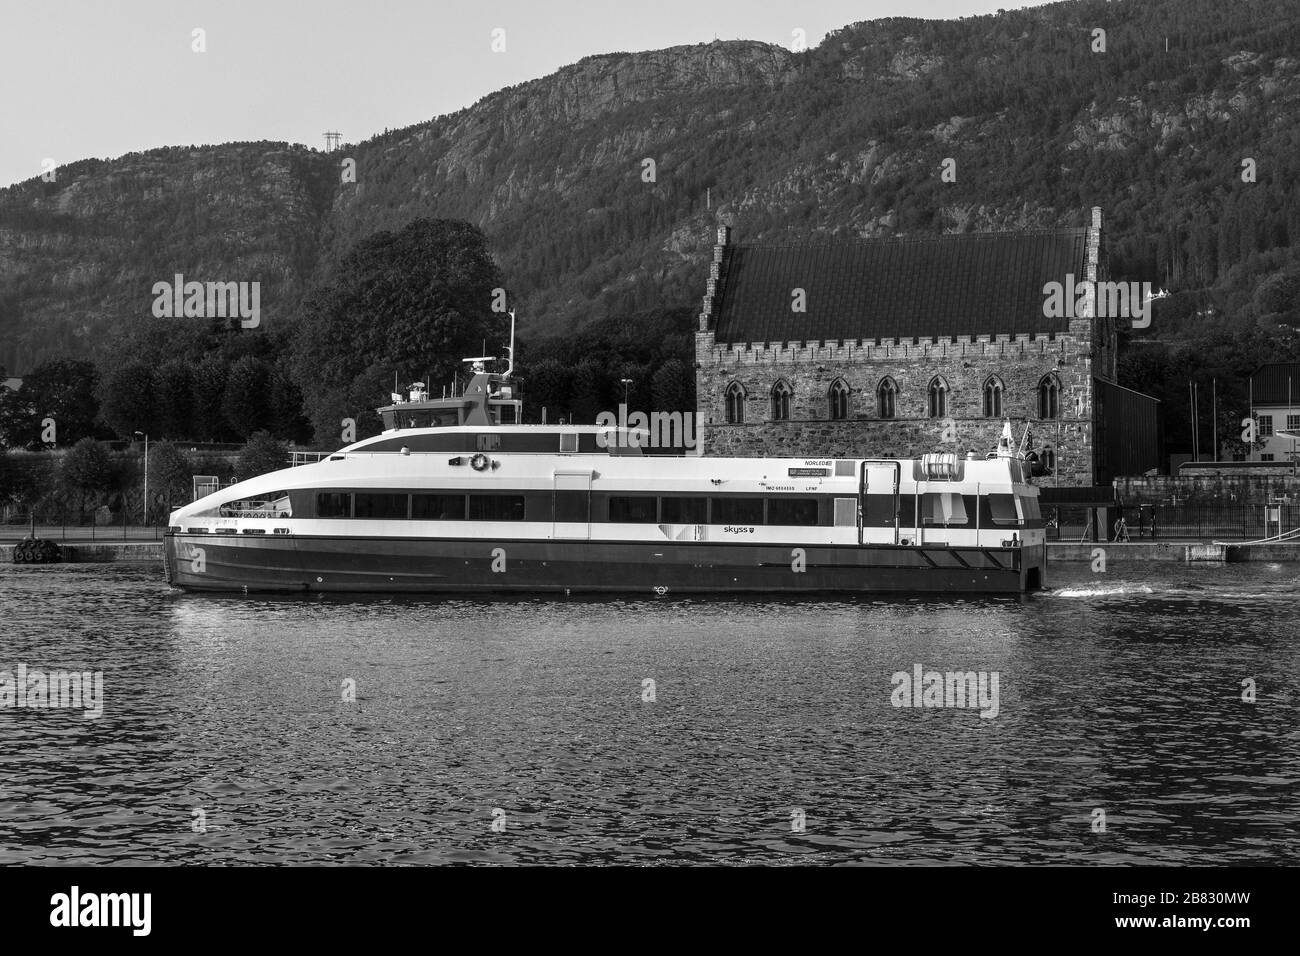 Catamarán de pasajeros de alta velocidad Fjordbris partiendo del puerto de Bergen, Noruega. Pasando por la antigua fortaleza de Haakonshallen Foto de stock